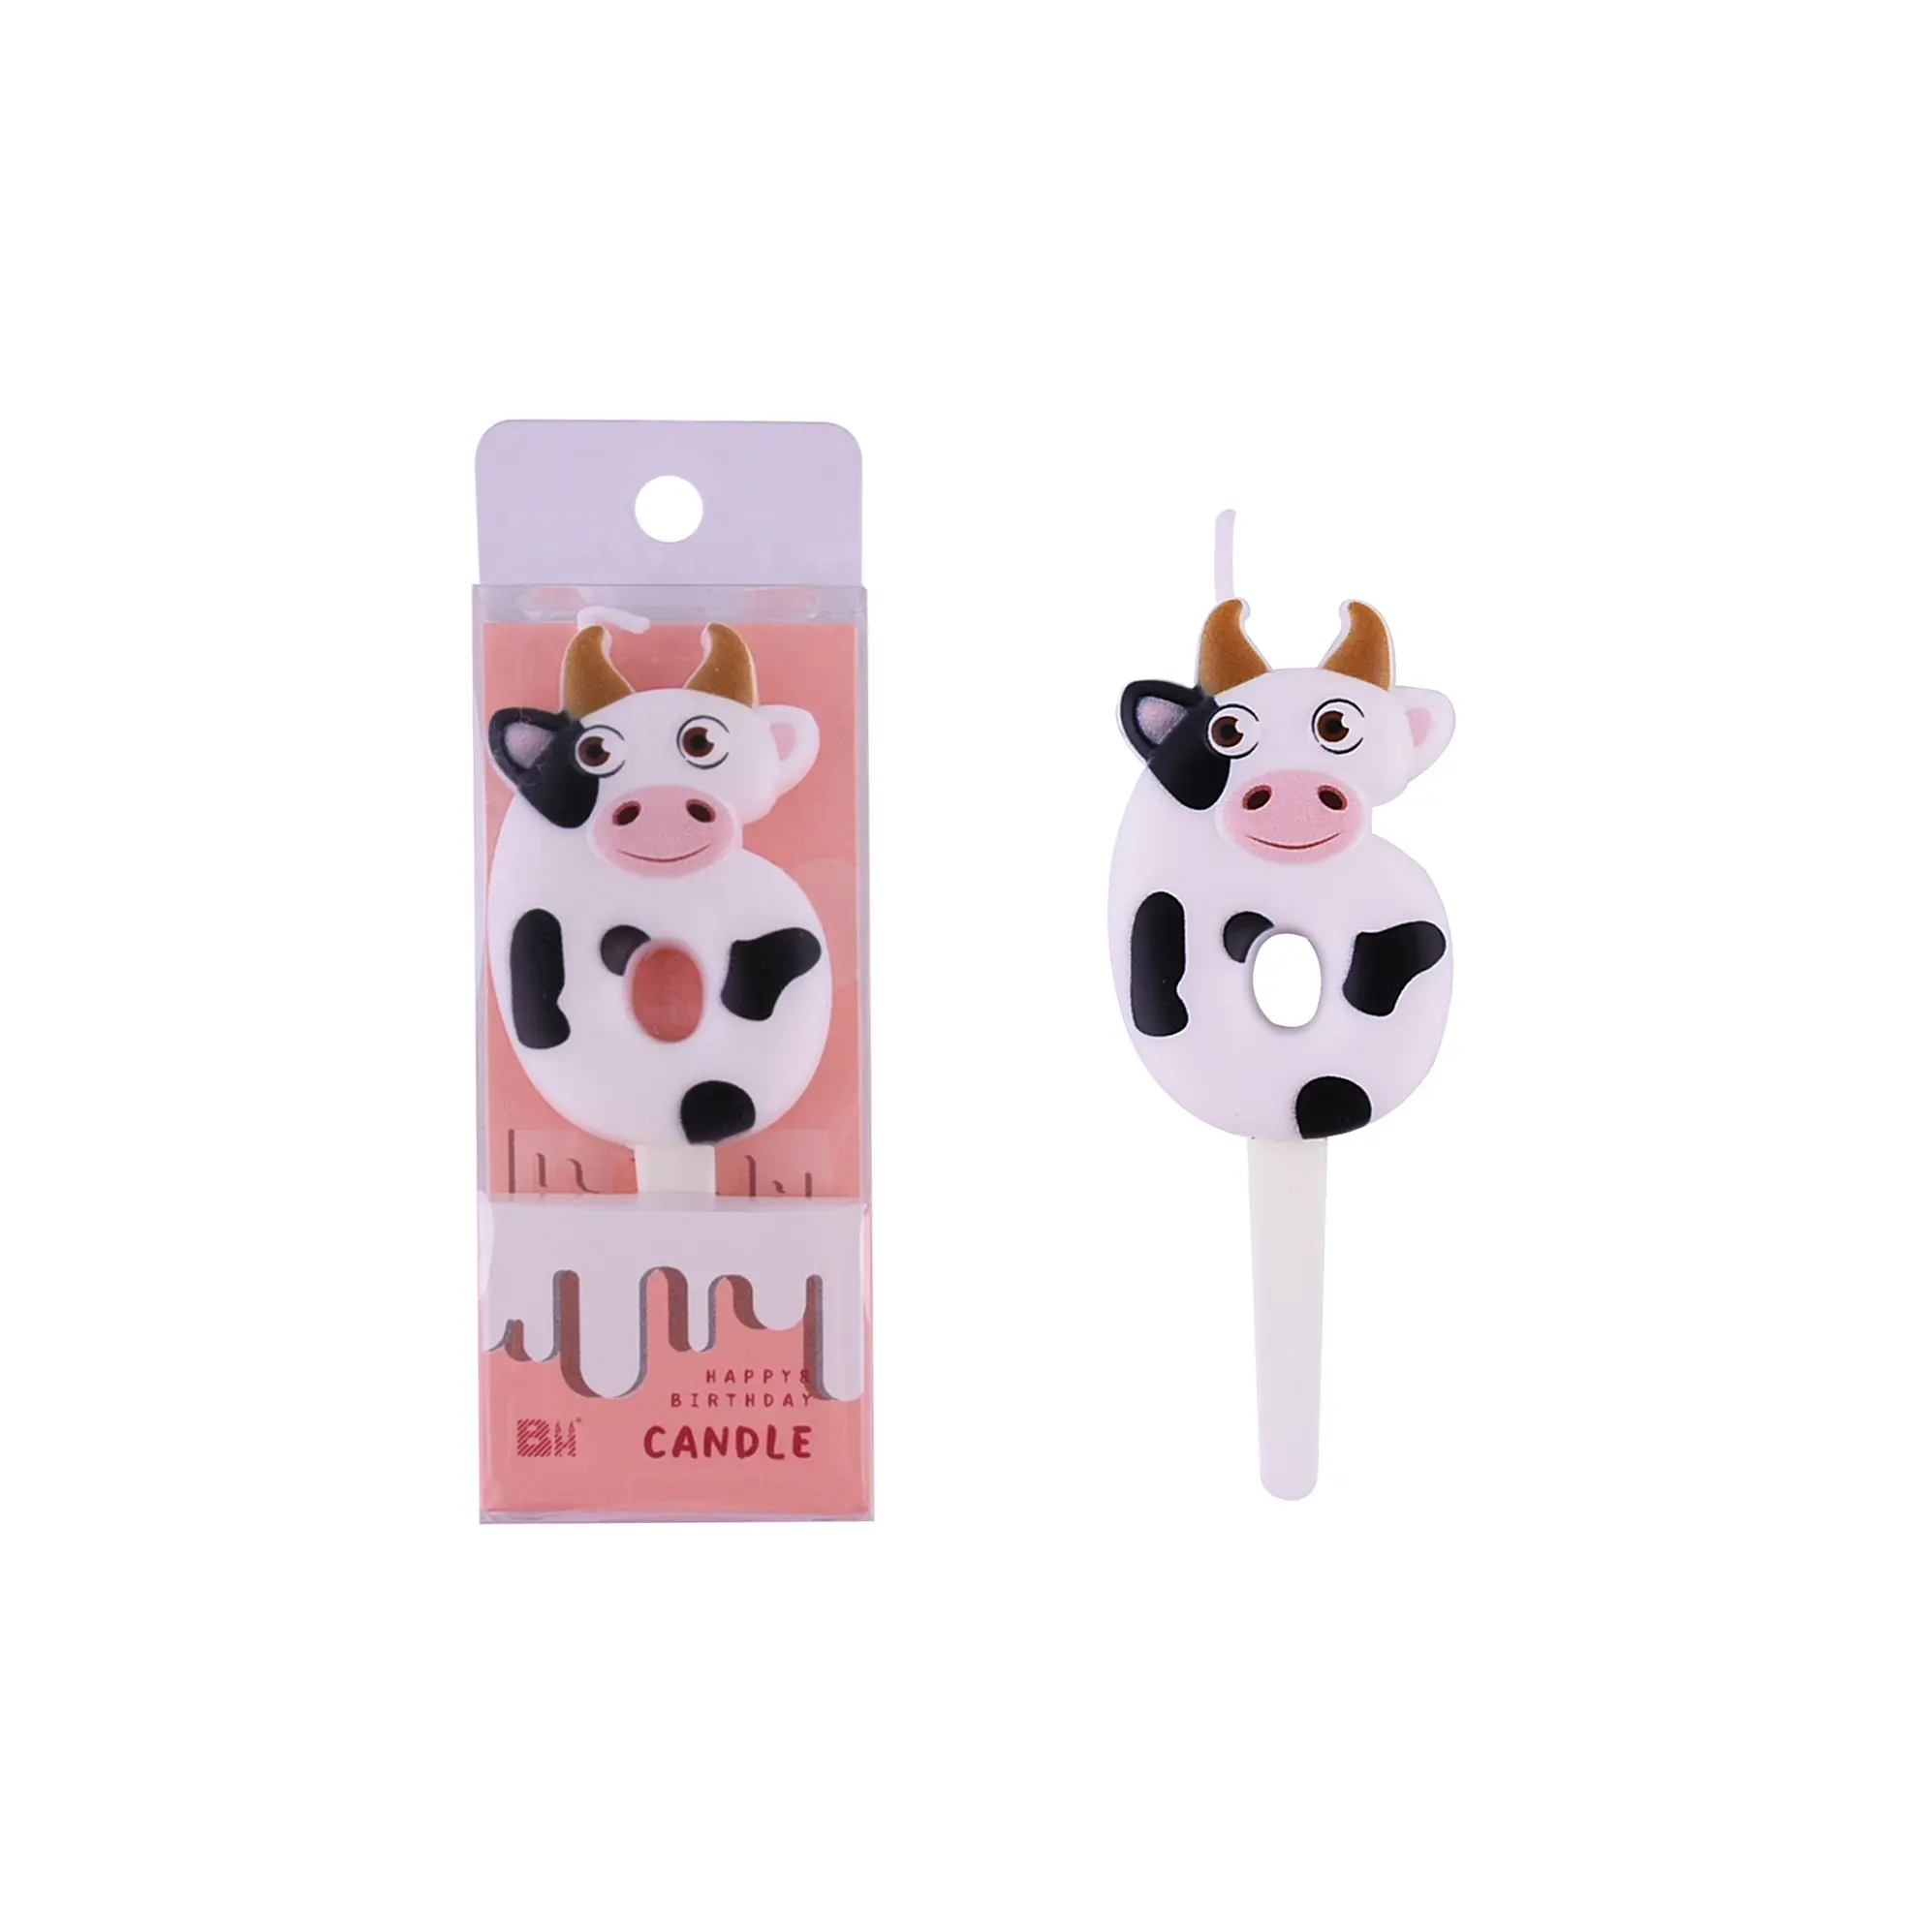 Nuevo diseño de la leche de vaca 3D forma 0-9 Número de velas de cumpleaños de fiesta